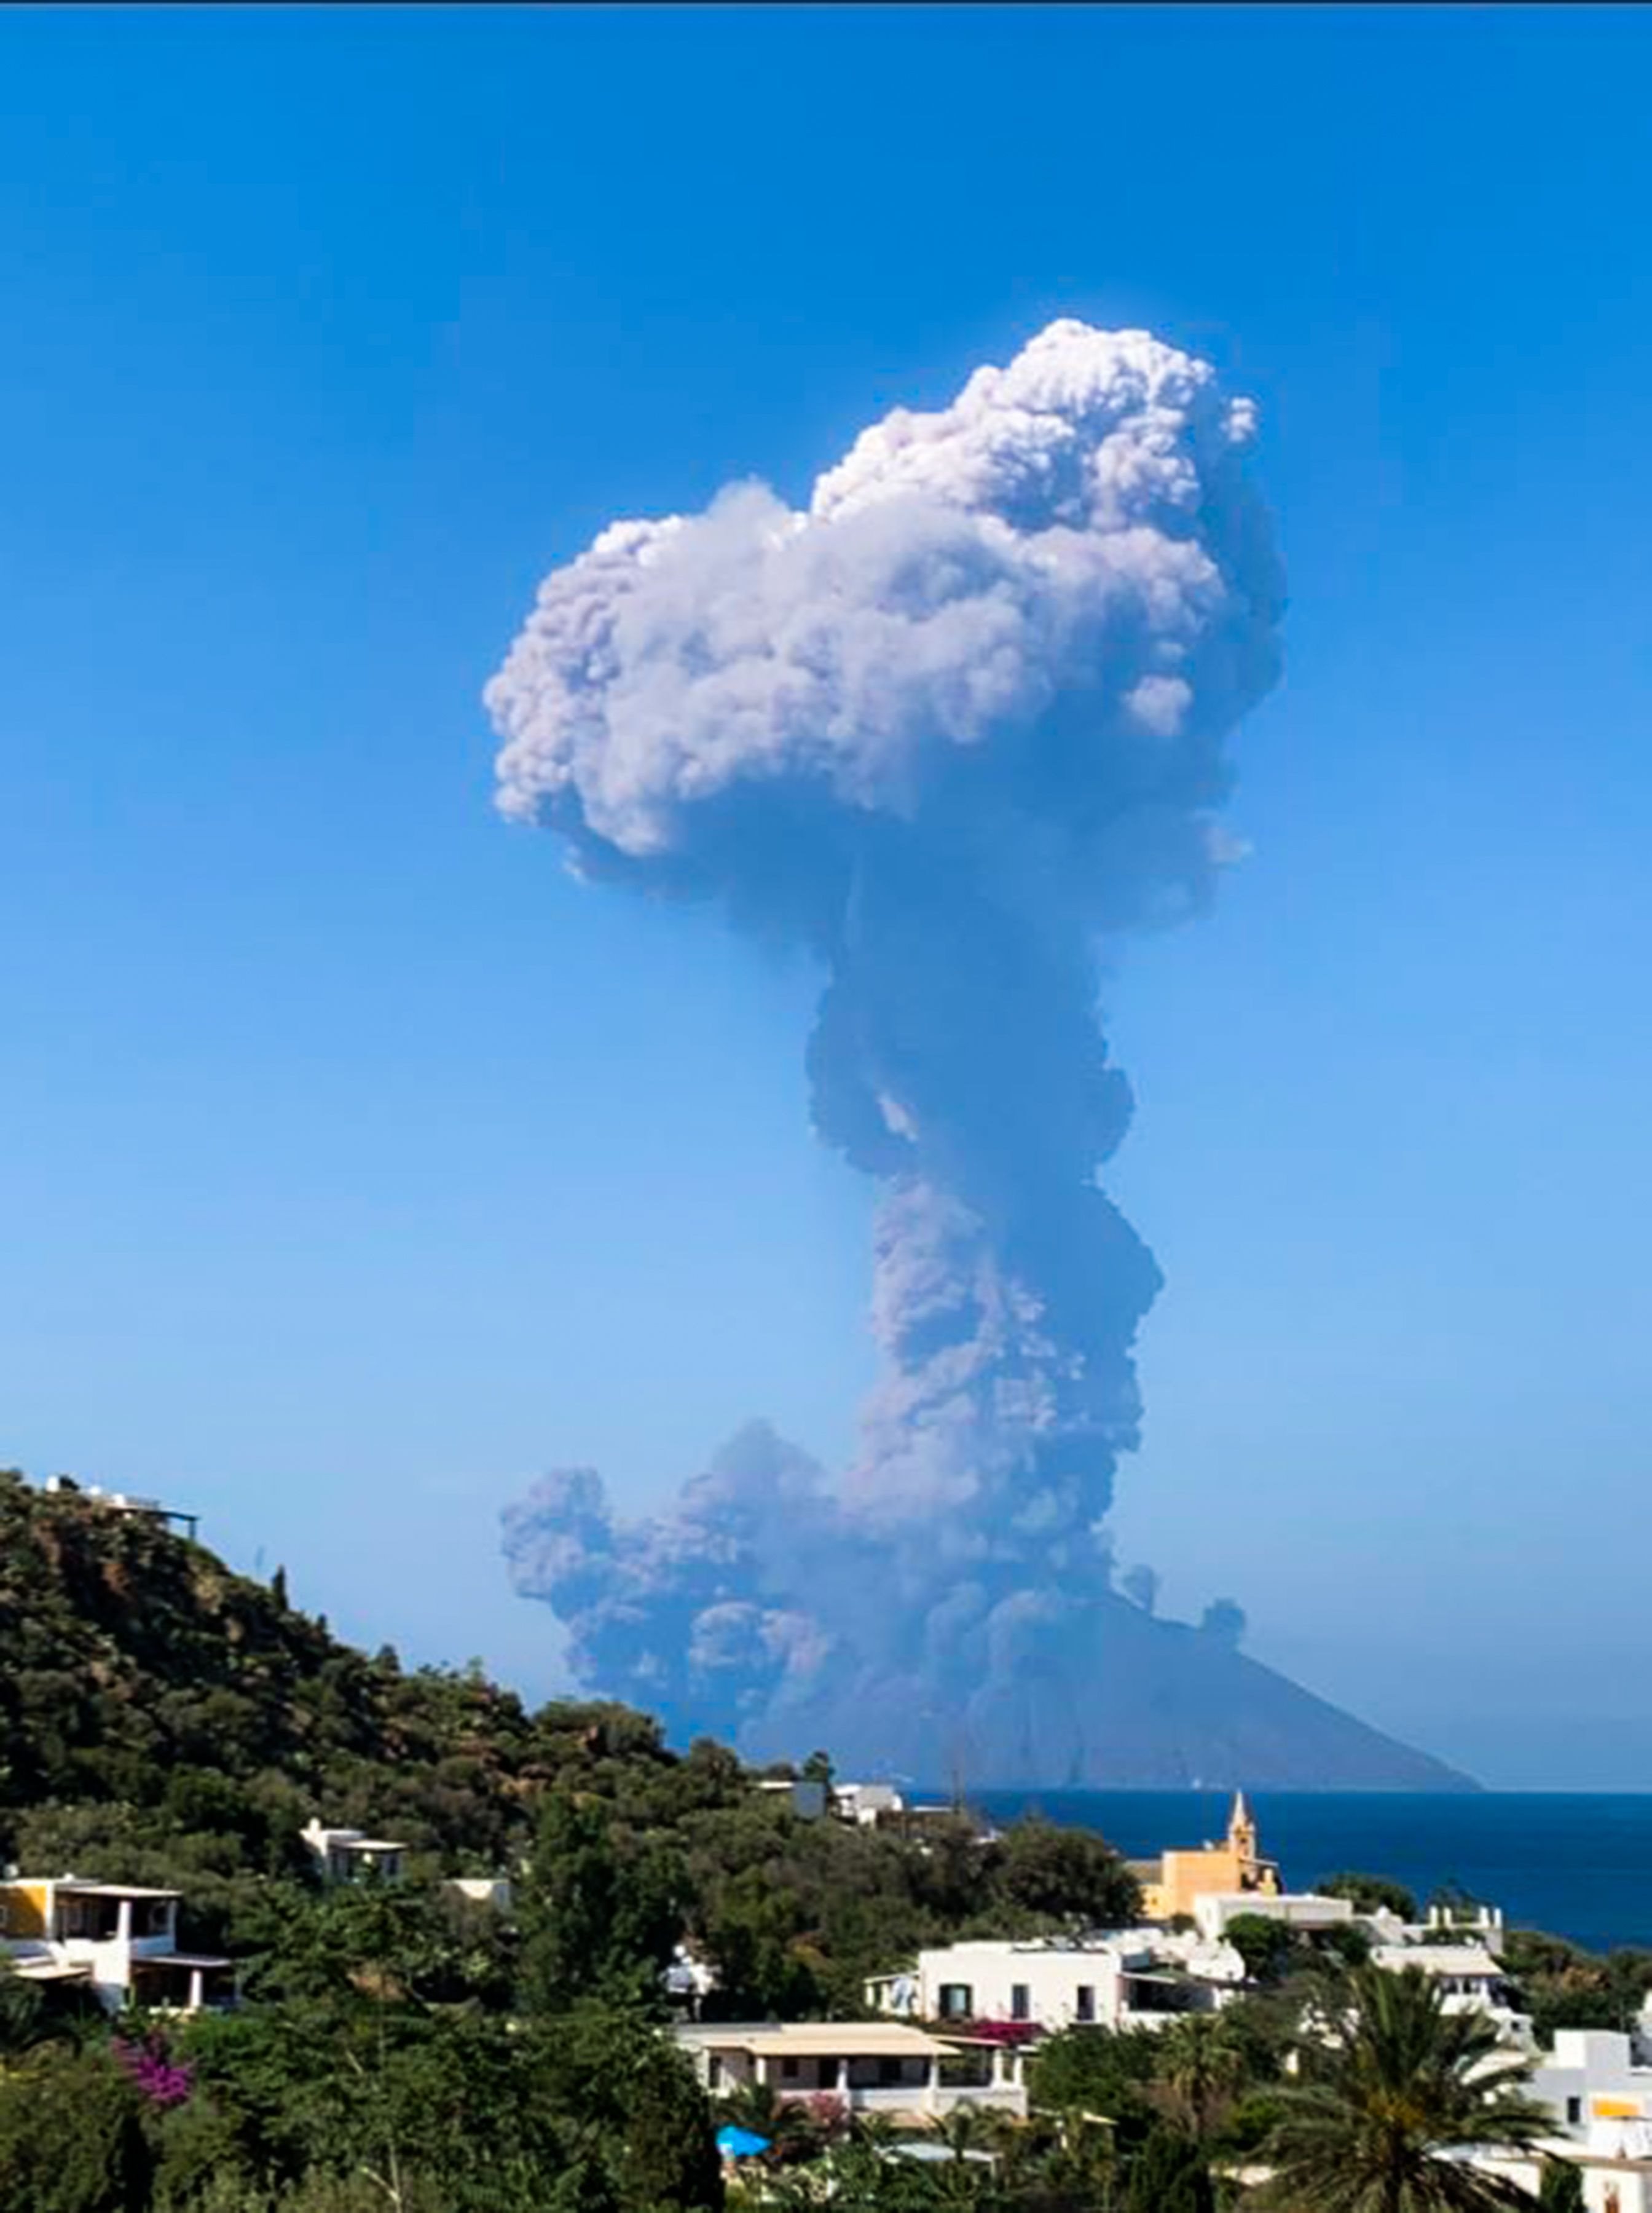 Пепел поднимается из вулкана с островом Панарея впереди